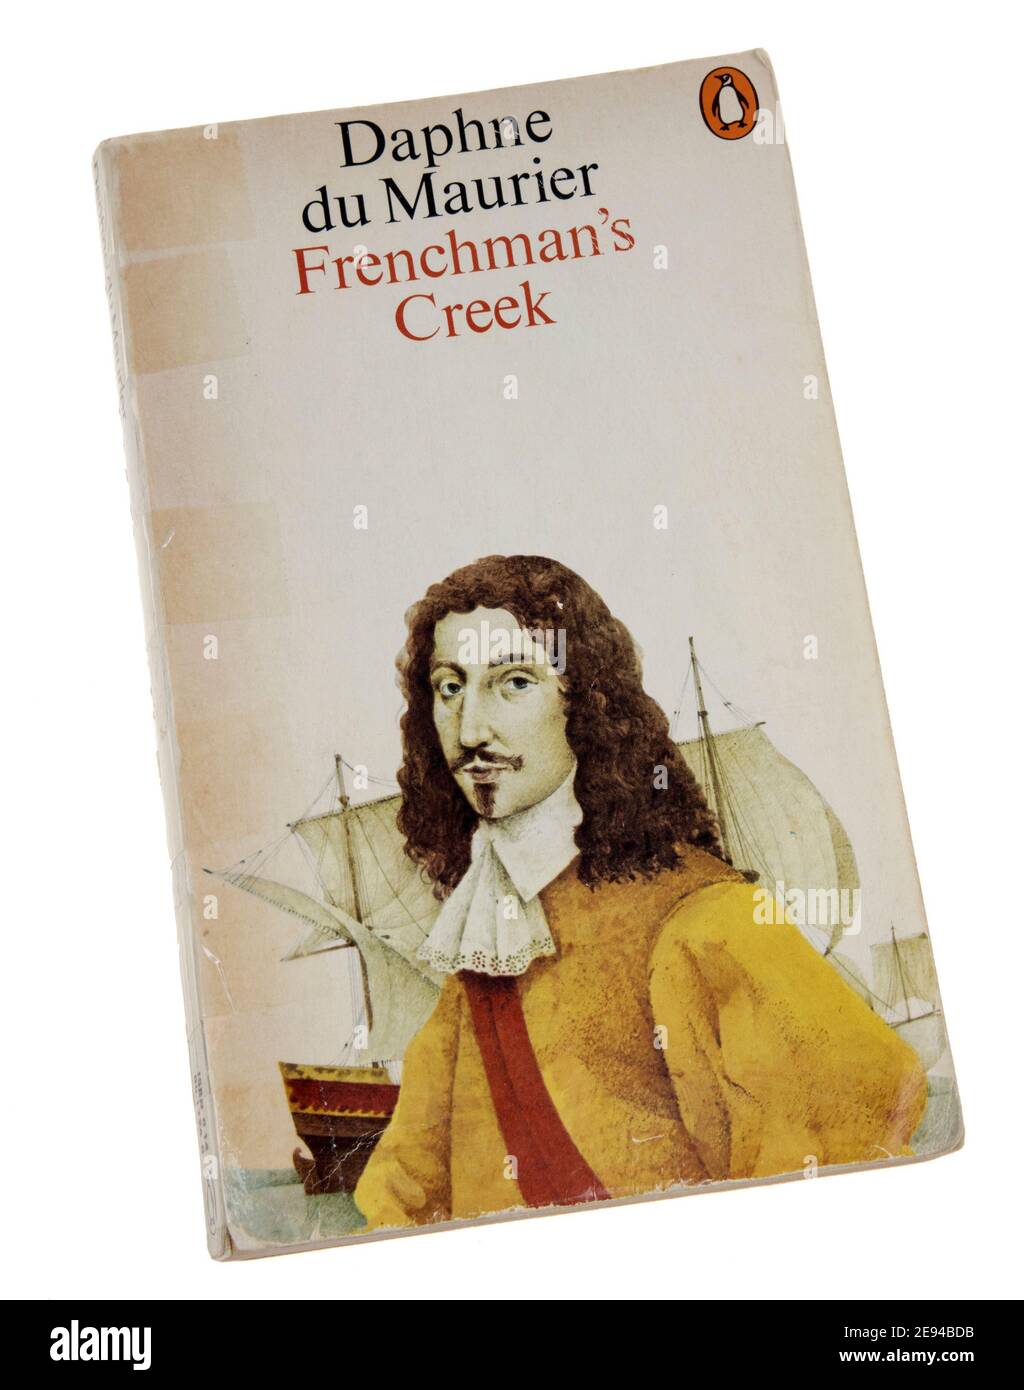 Frenchman's Creek par Daphne du Maurier livre de poche publié par Puffin en 1962, publié pour la première fois en 1941 Banque D'Images